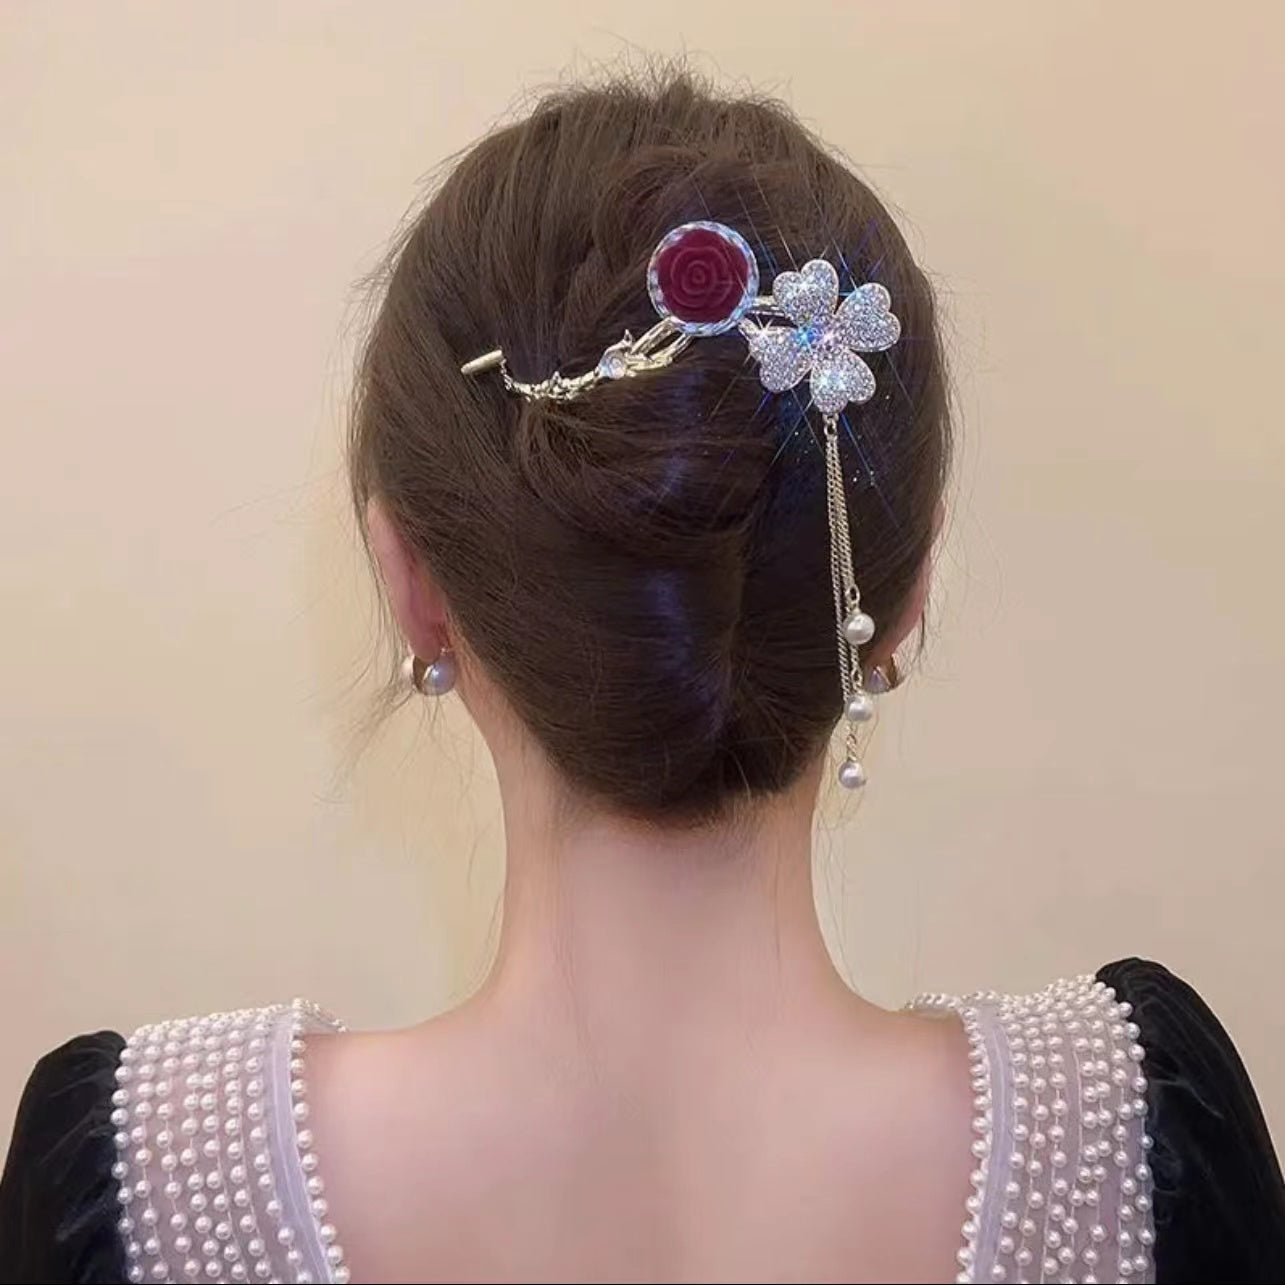 Rotatable rose hair clip